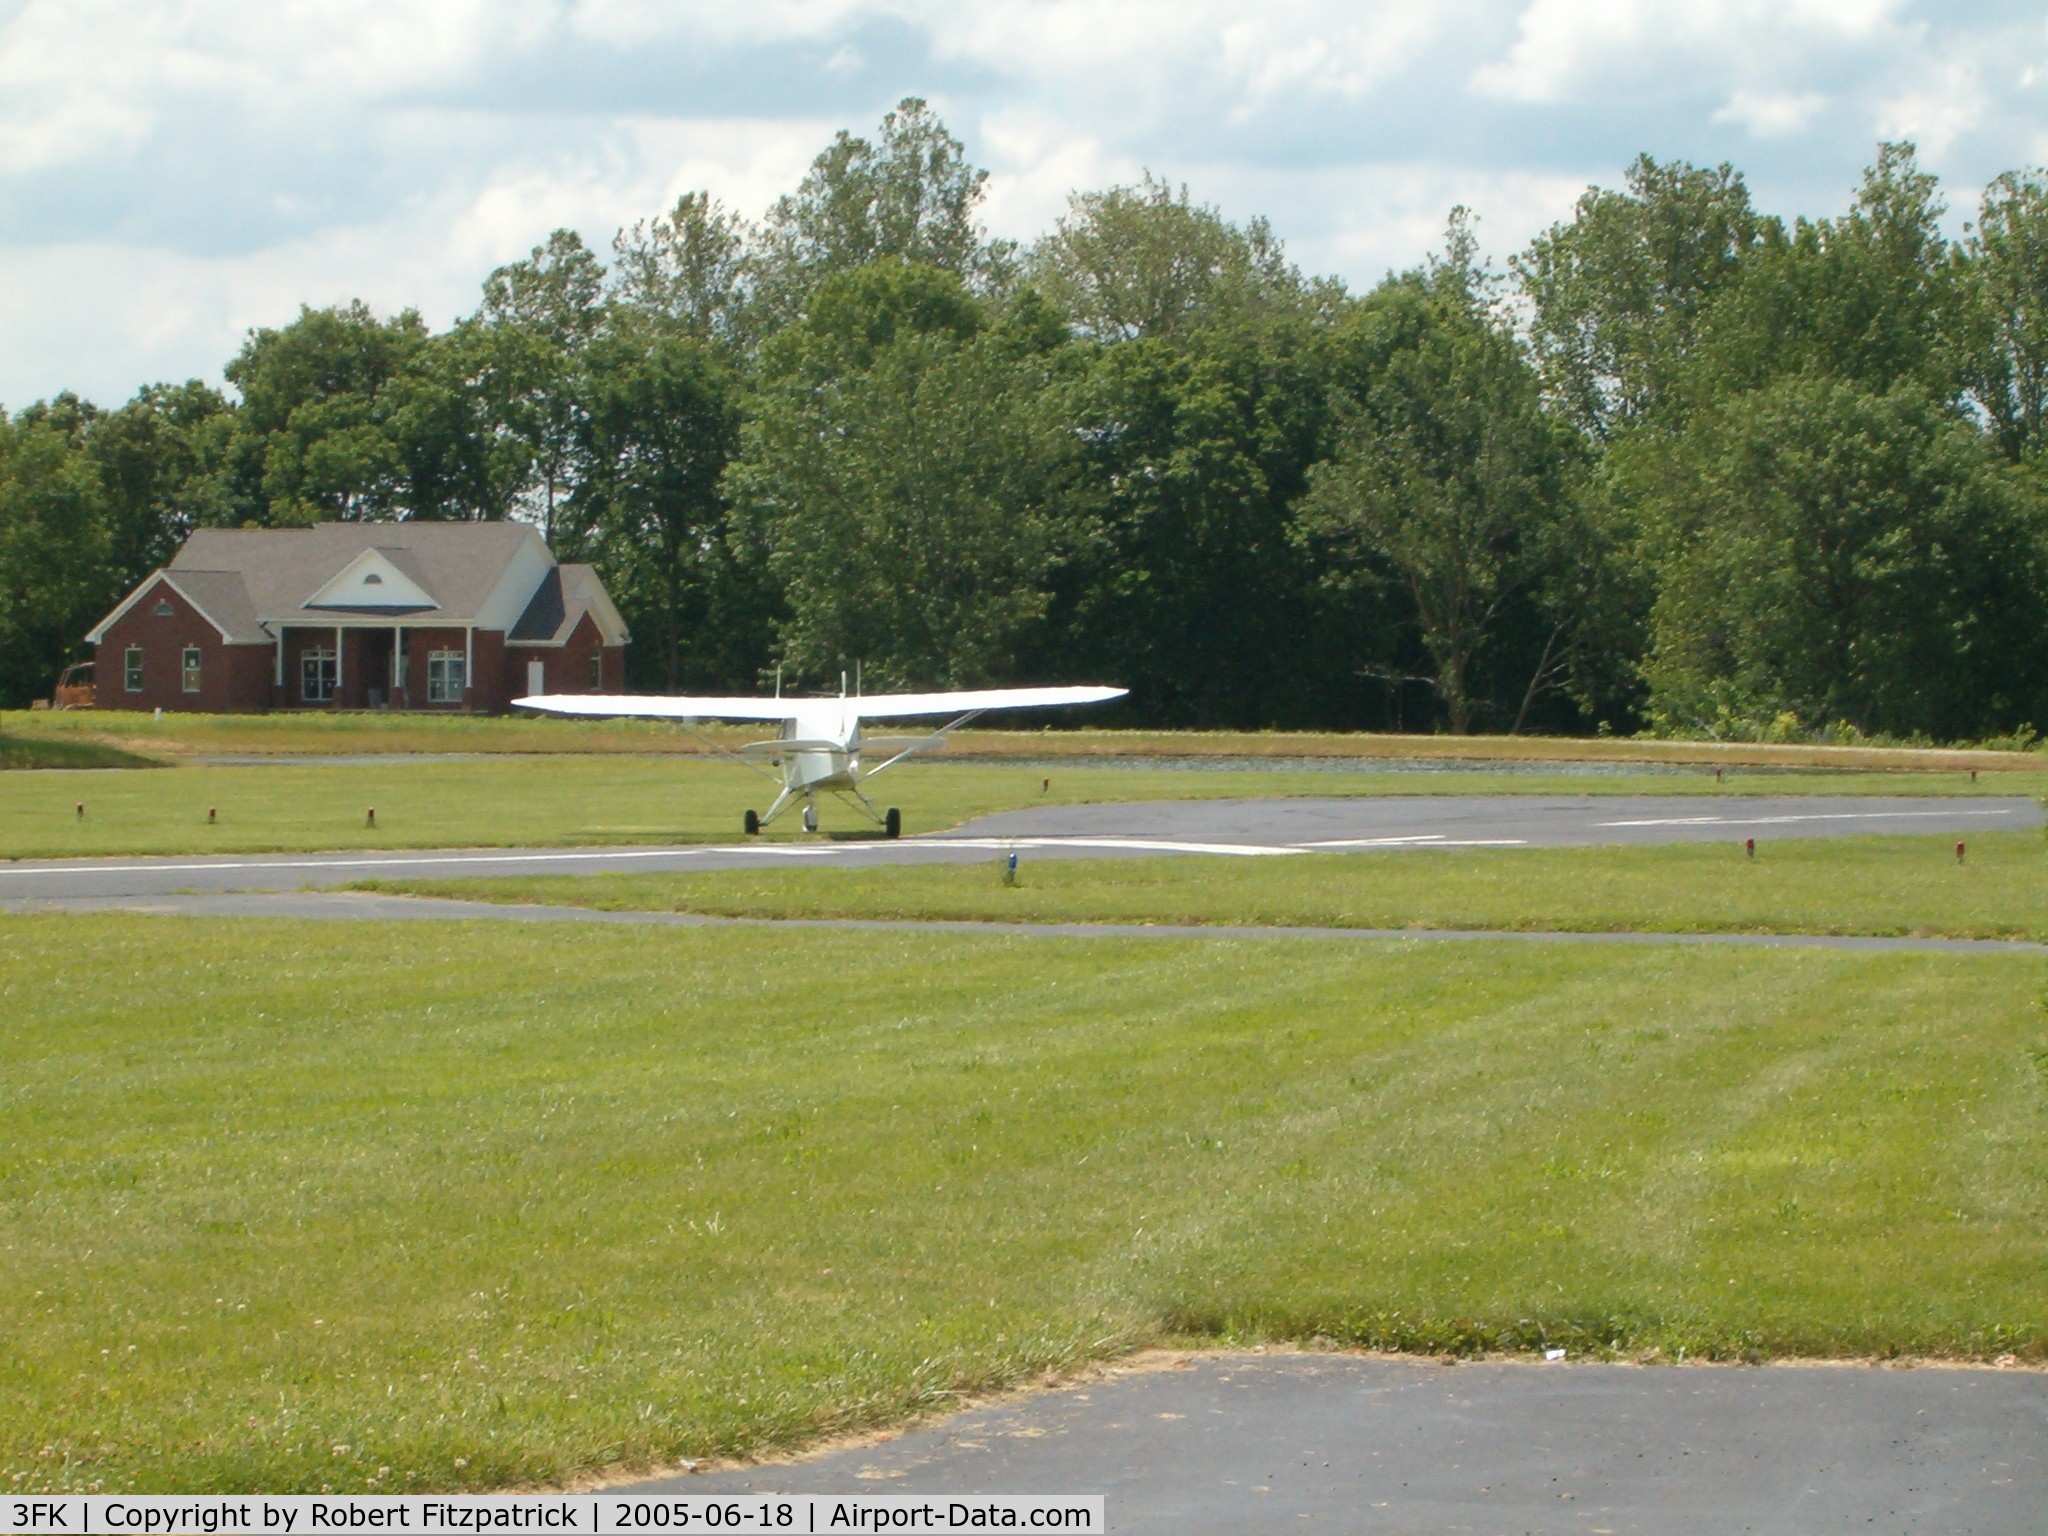 Franklin Flying Field Airport (3FK) - Franklin Flying Field